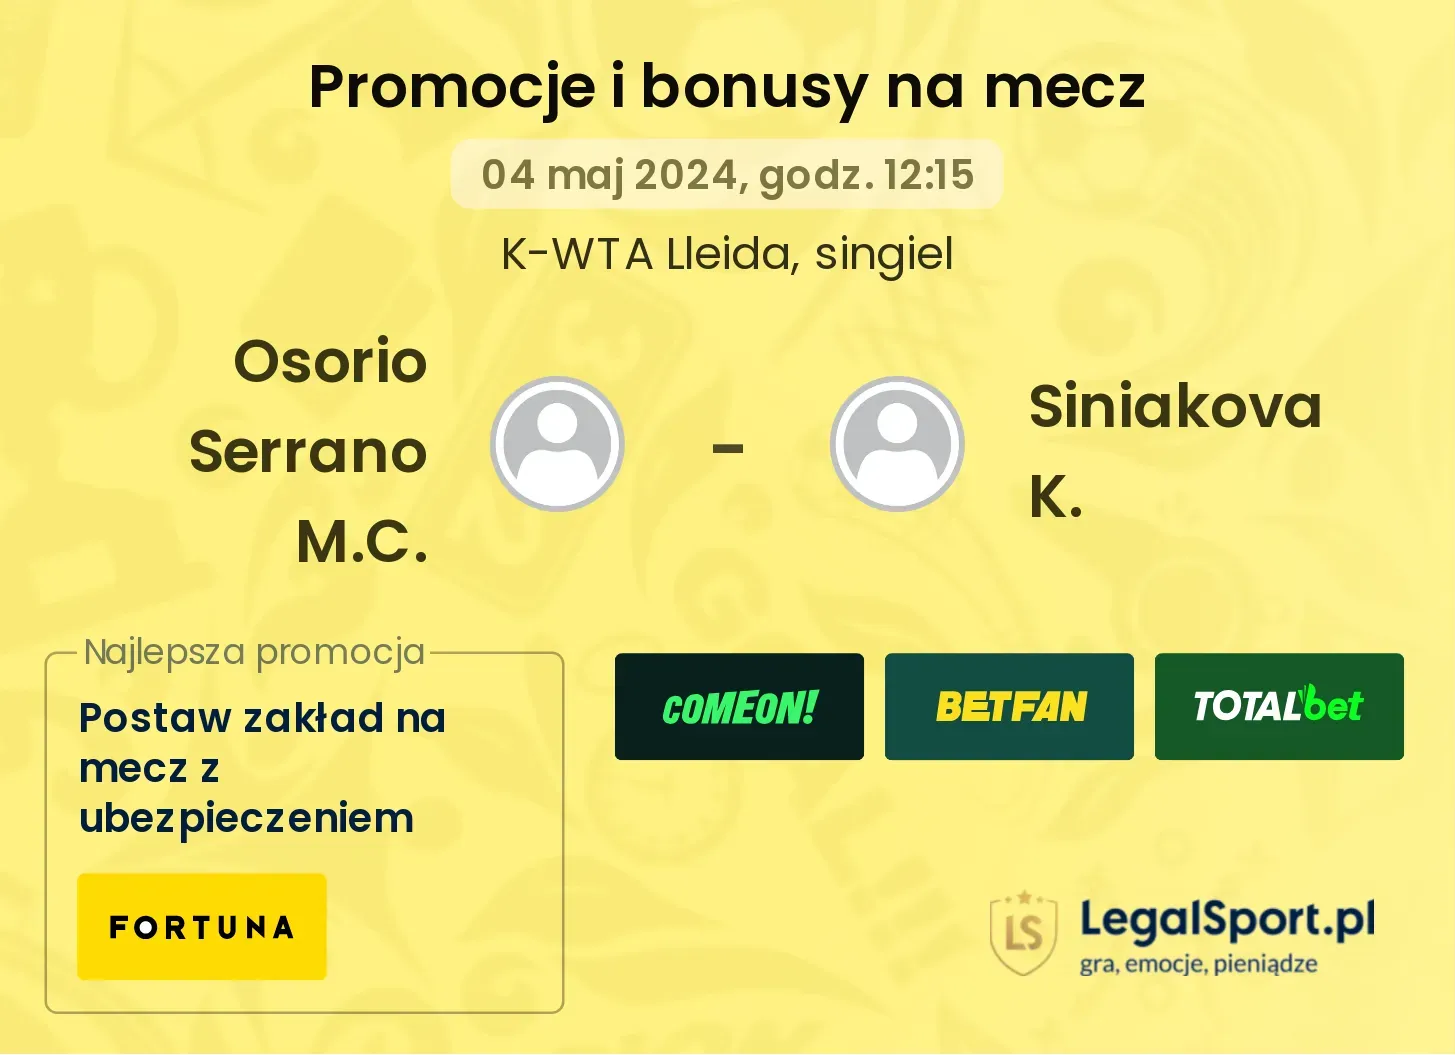 Osorio Serrano M.C. - Siniakova K. promocje bonusy na mecz